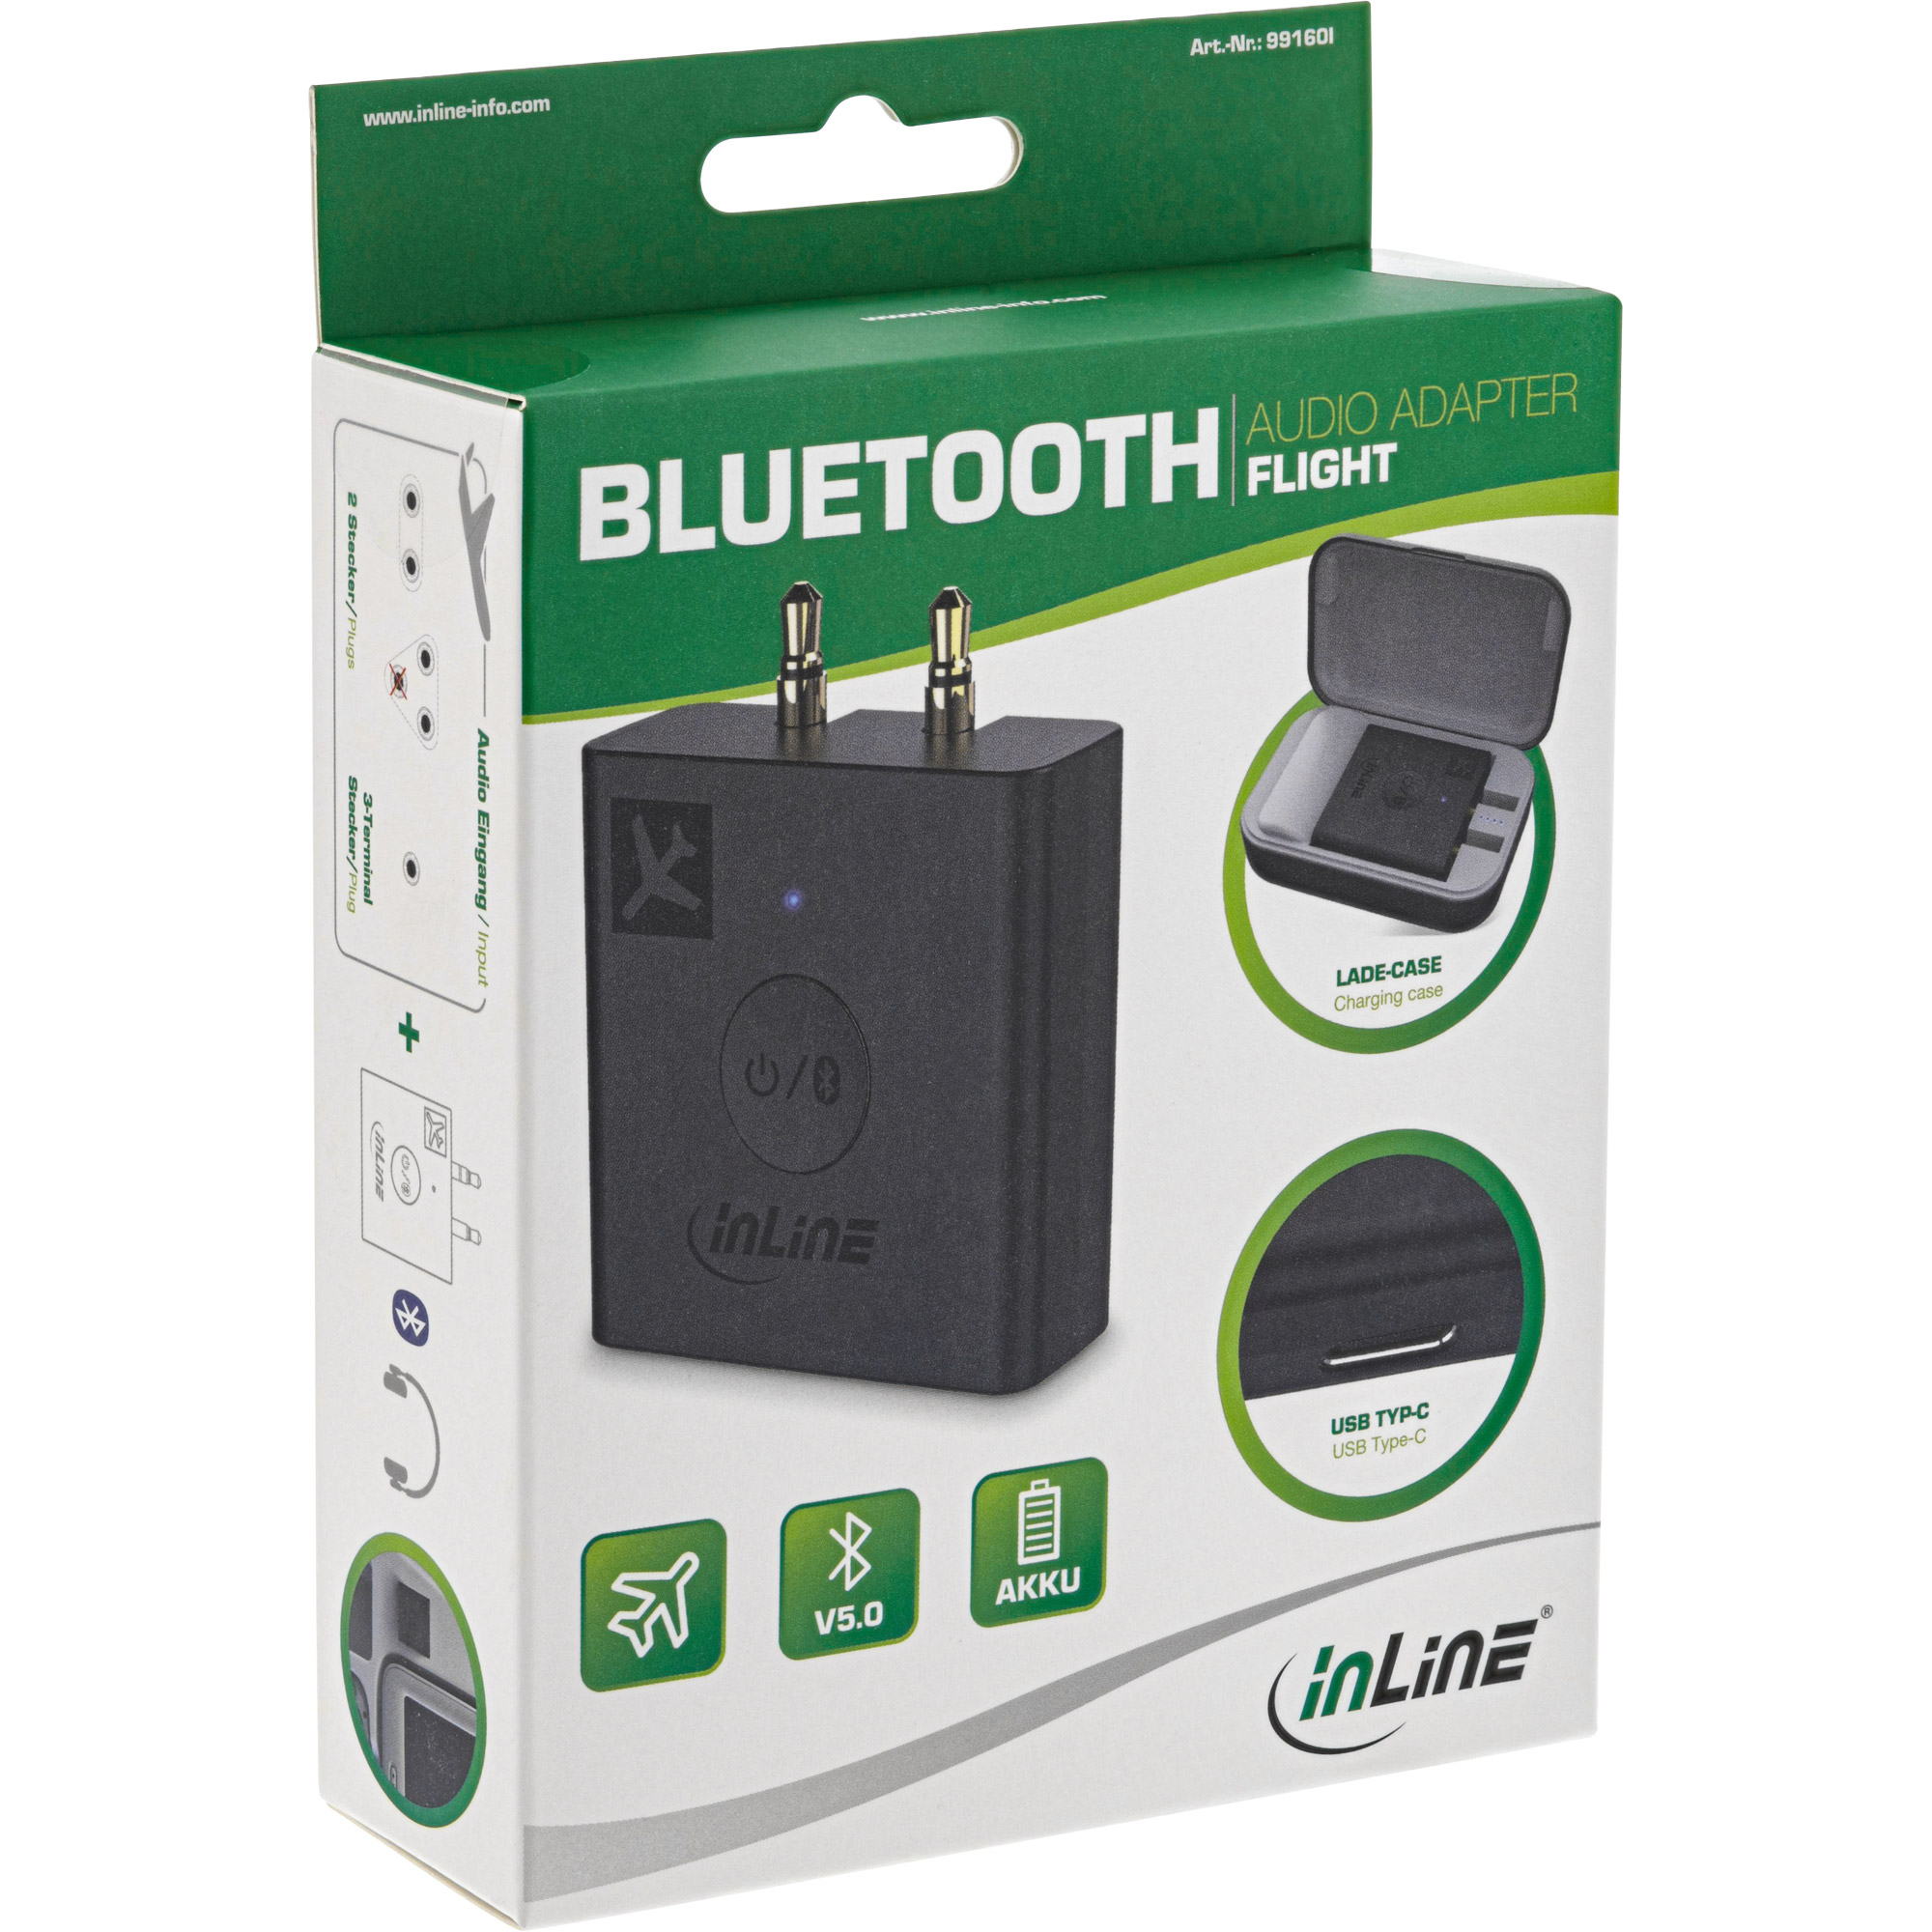 InLine® Flugzeug Bluetooth Audio Transmitter Sender, BT 5.0, aptX